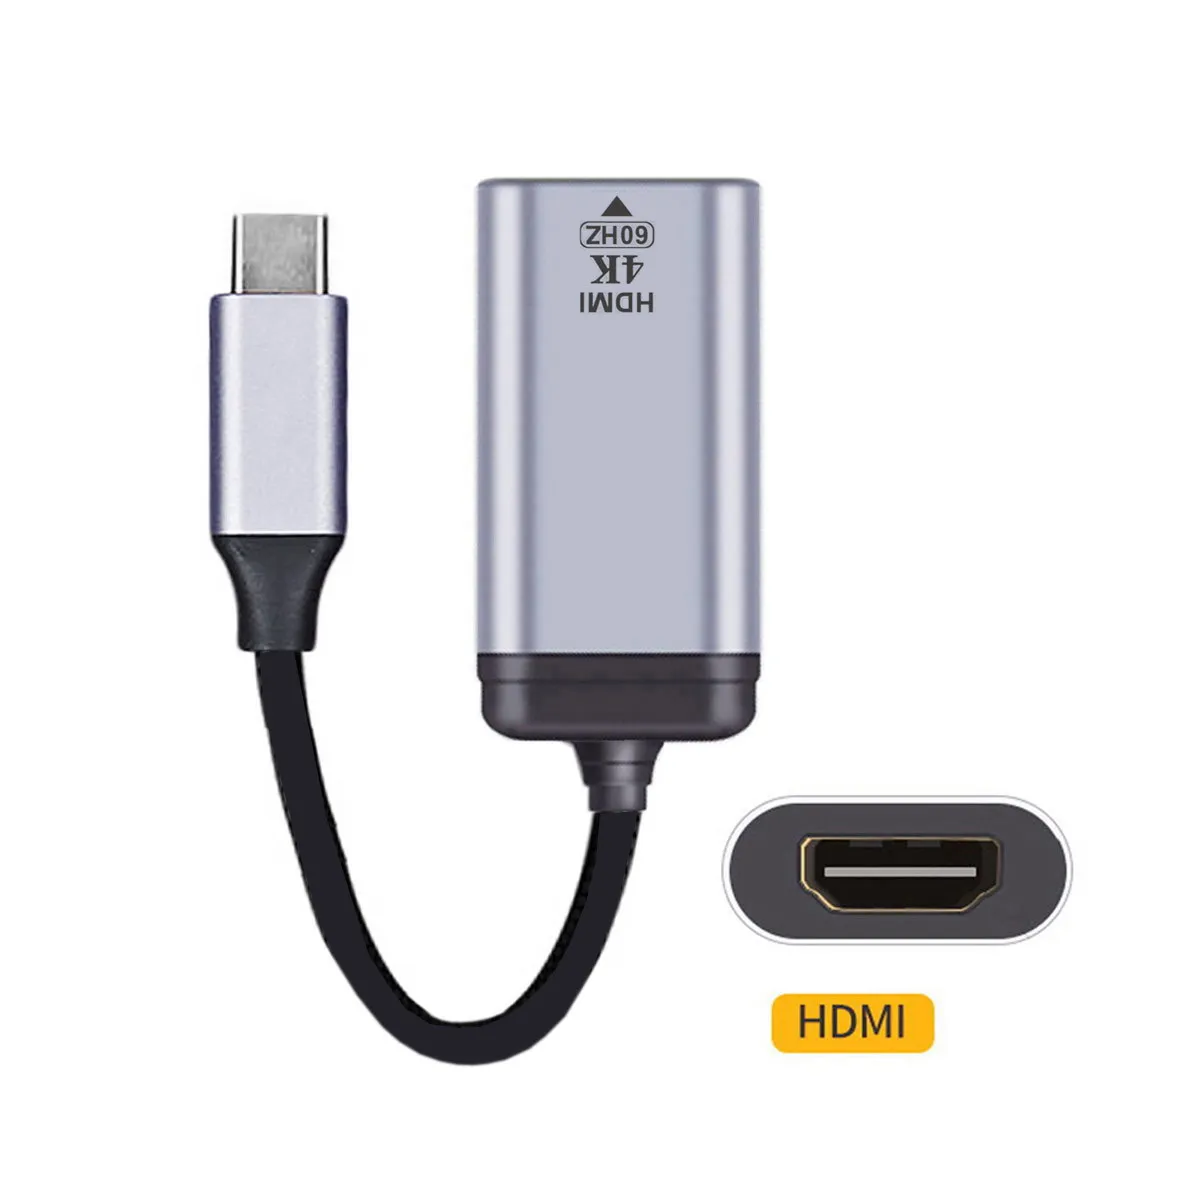 

Совместимый кабель Xiwai USB-C с HDMI адаптер HDTV 4K 60 Гц 1080p для планшетов, телефонов и ноутбуков